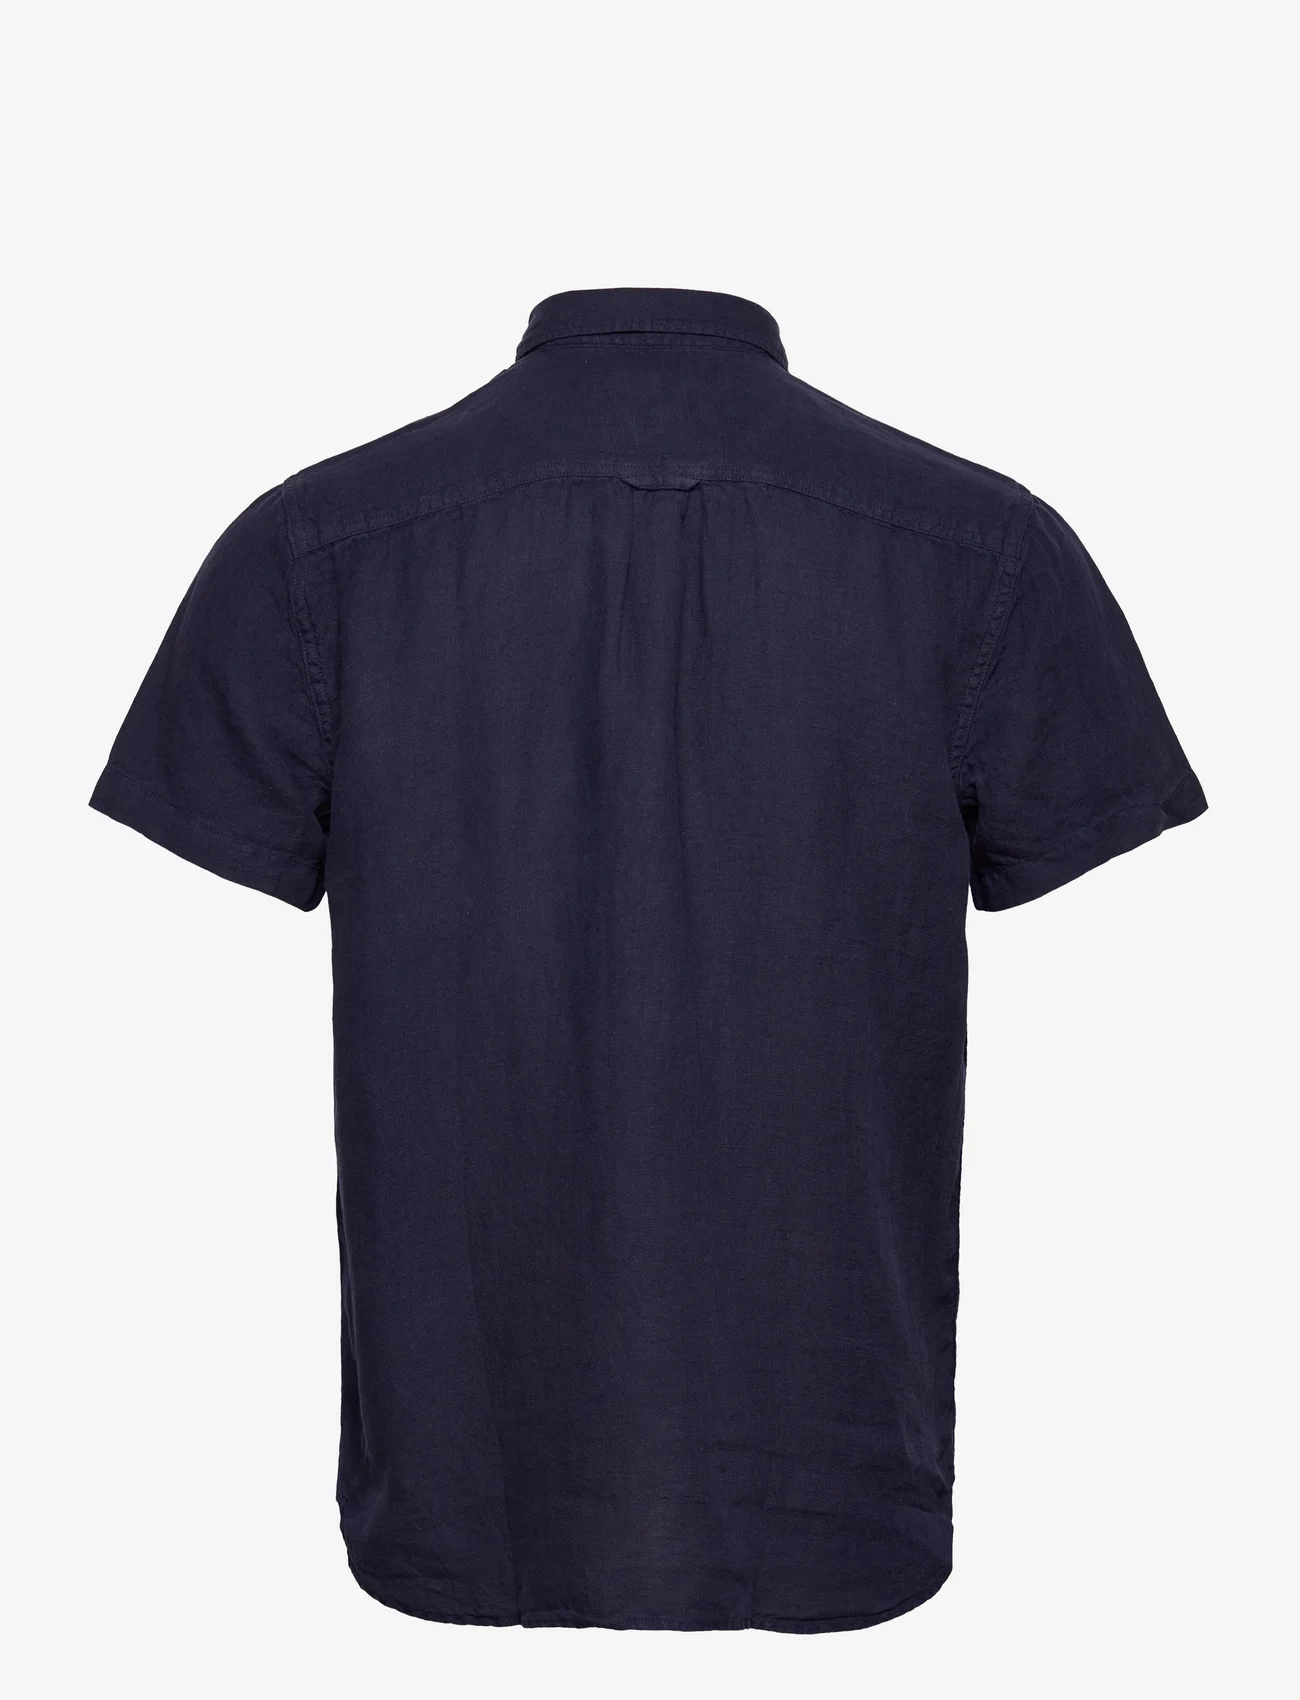 Sebago - Linen Shirt Short Sleeve - lina krekli - navy - 1